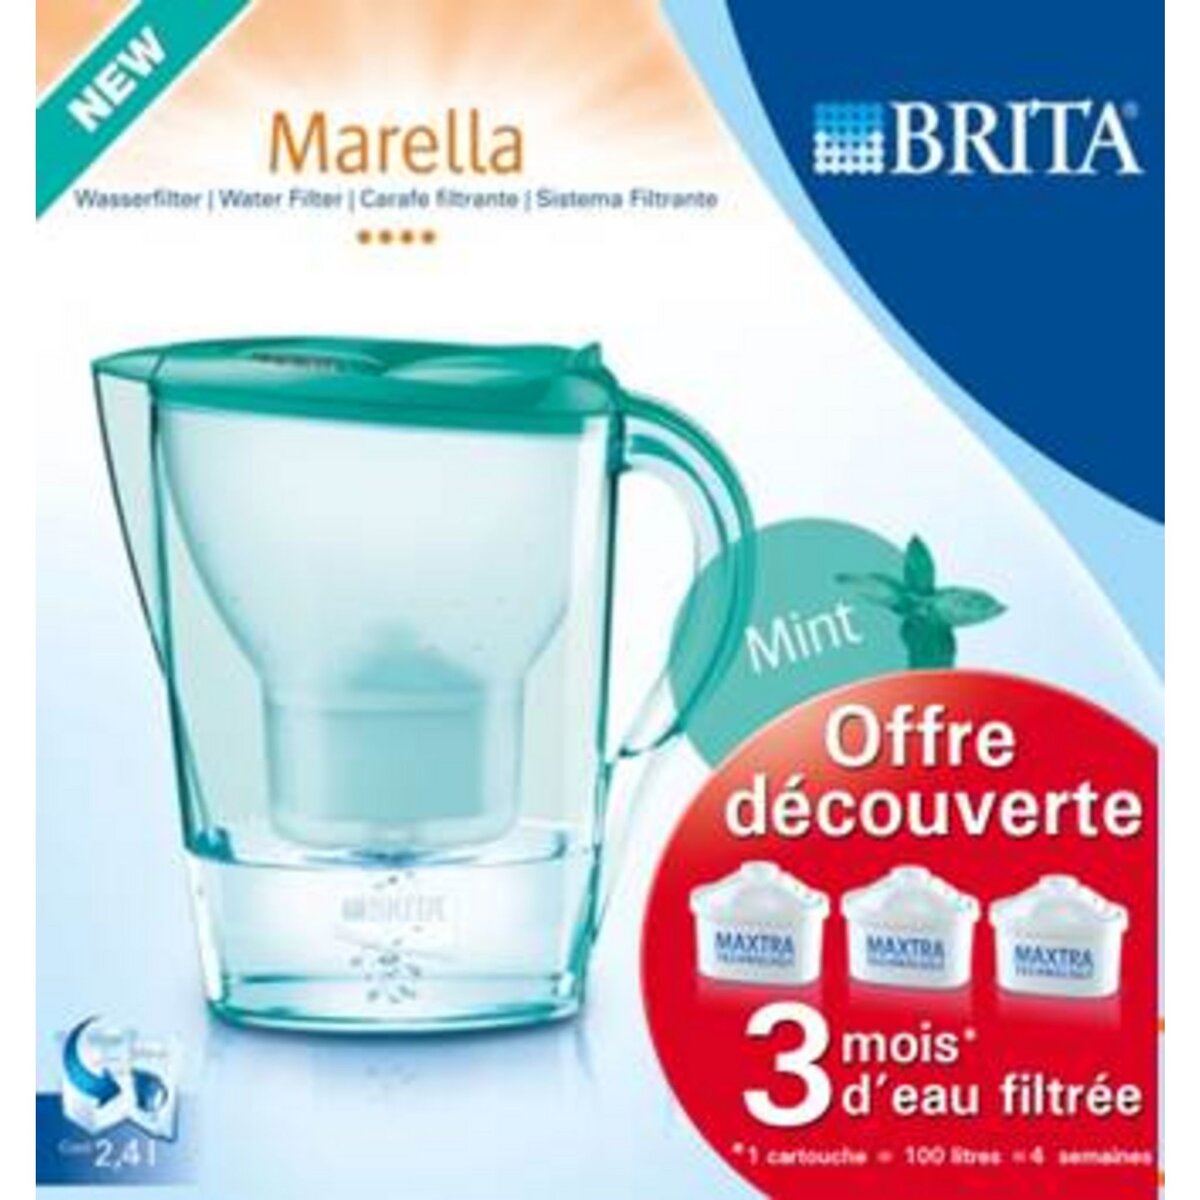 BRITA Carafe Marella Menthe + 3 cartouches Maxtra